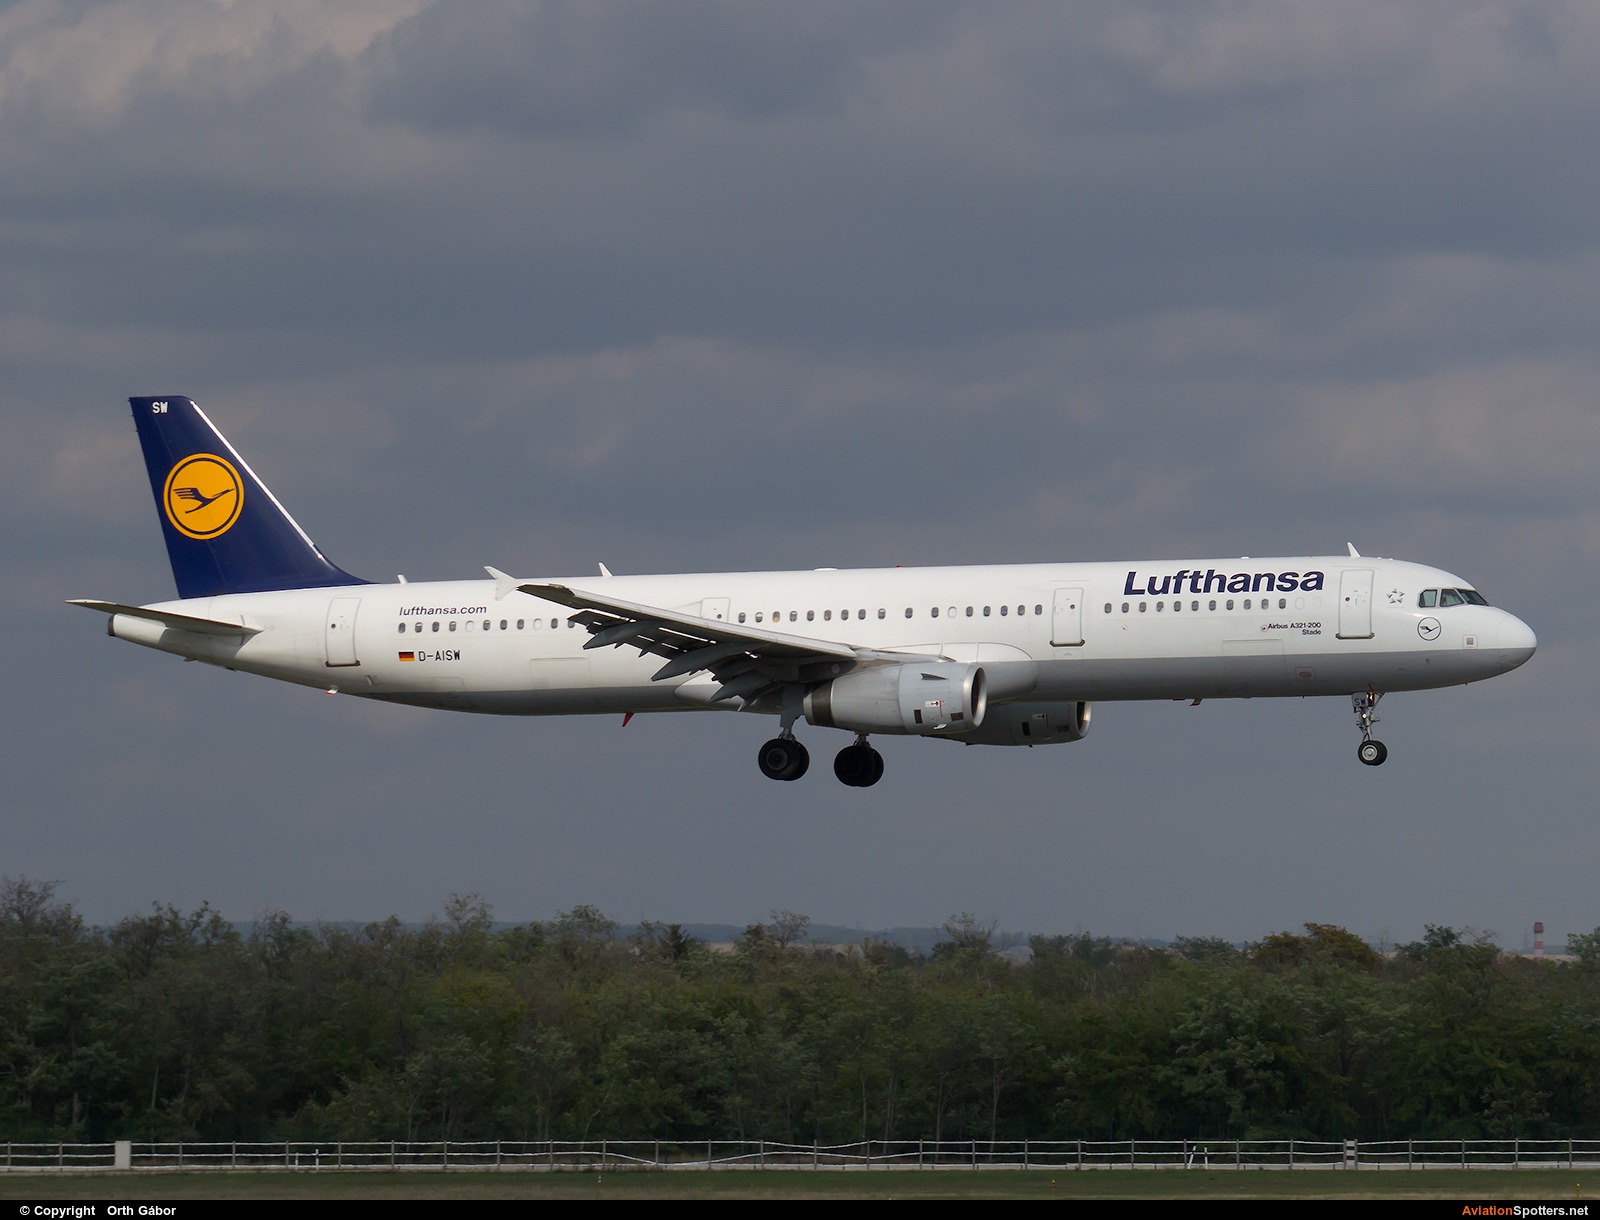 Lufthansa  -  A321  (D-AISW) By Orth Gábor (Roodkop)